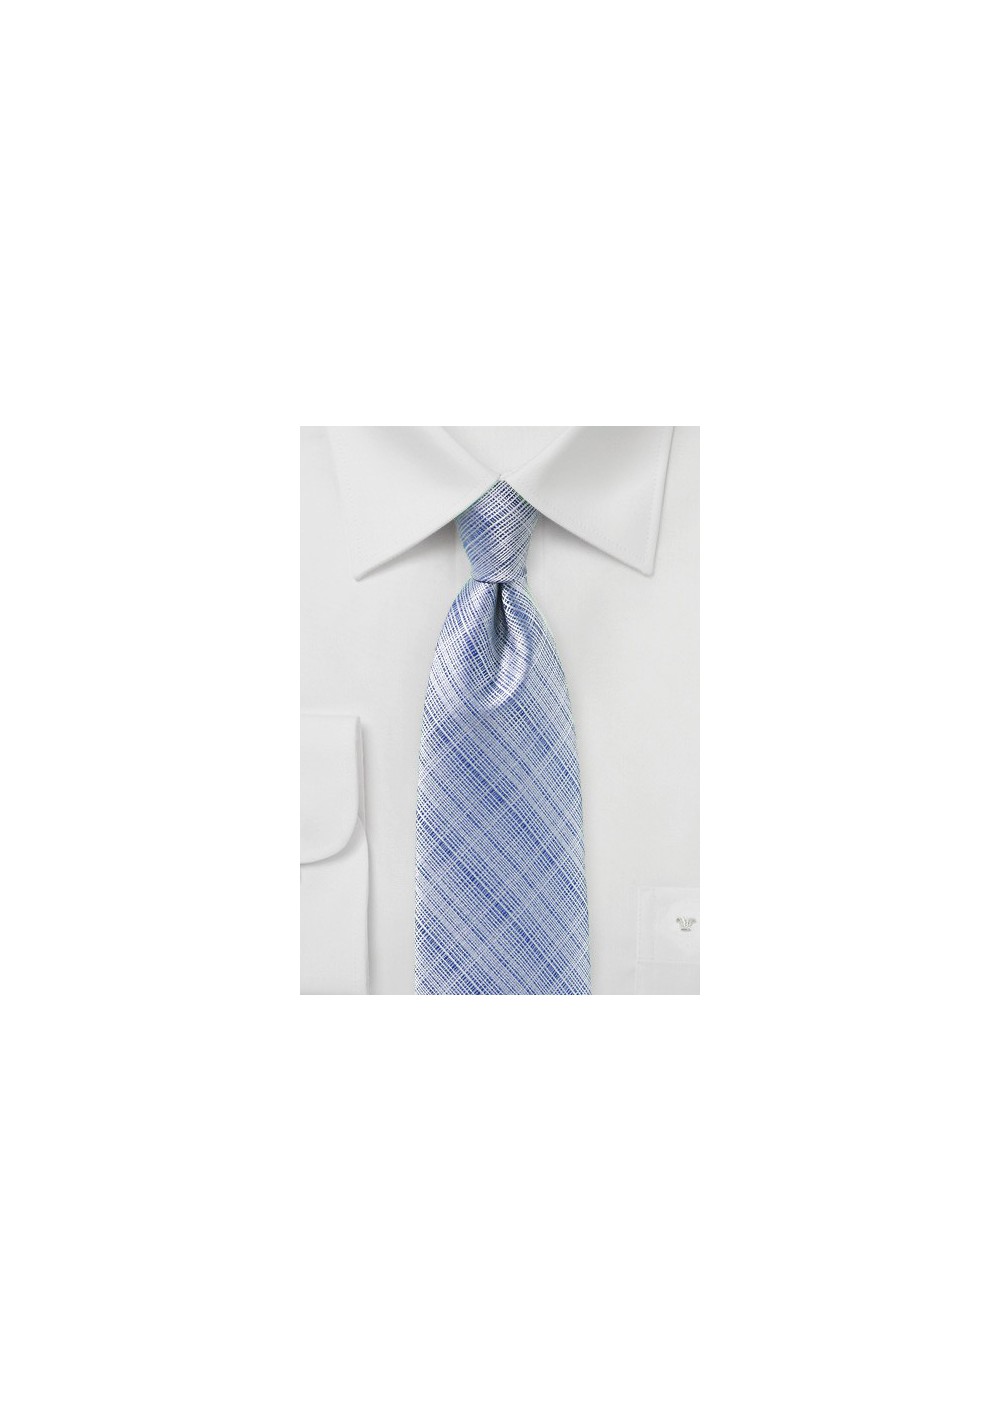 Textured Mens Tie in Kentucky Blue